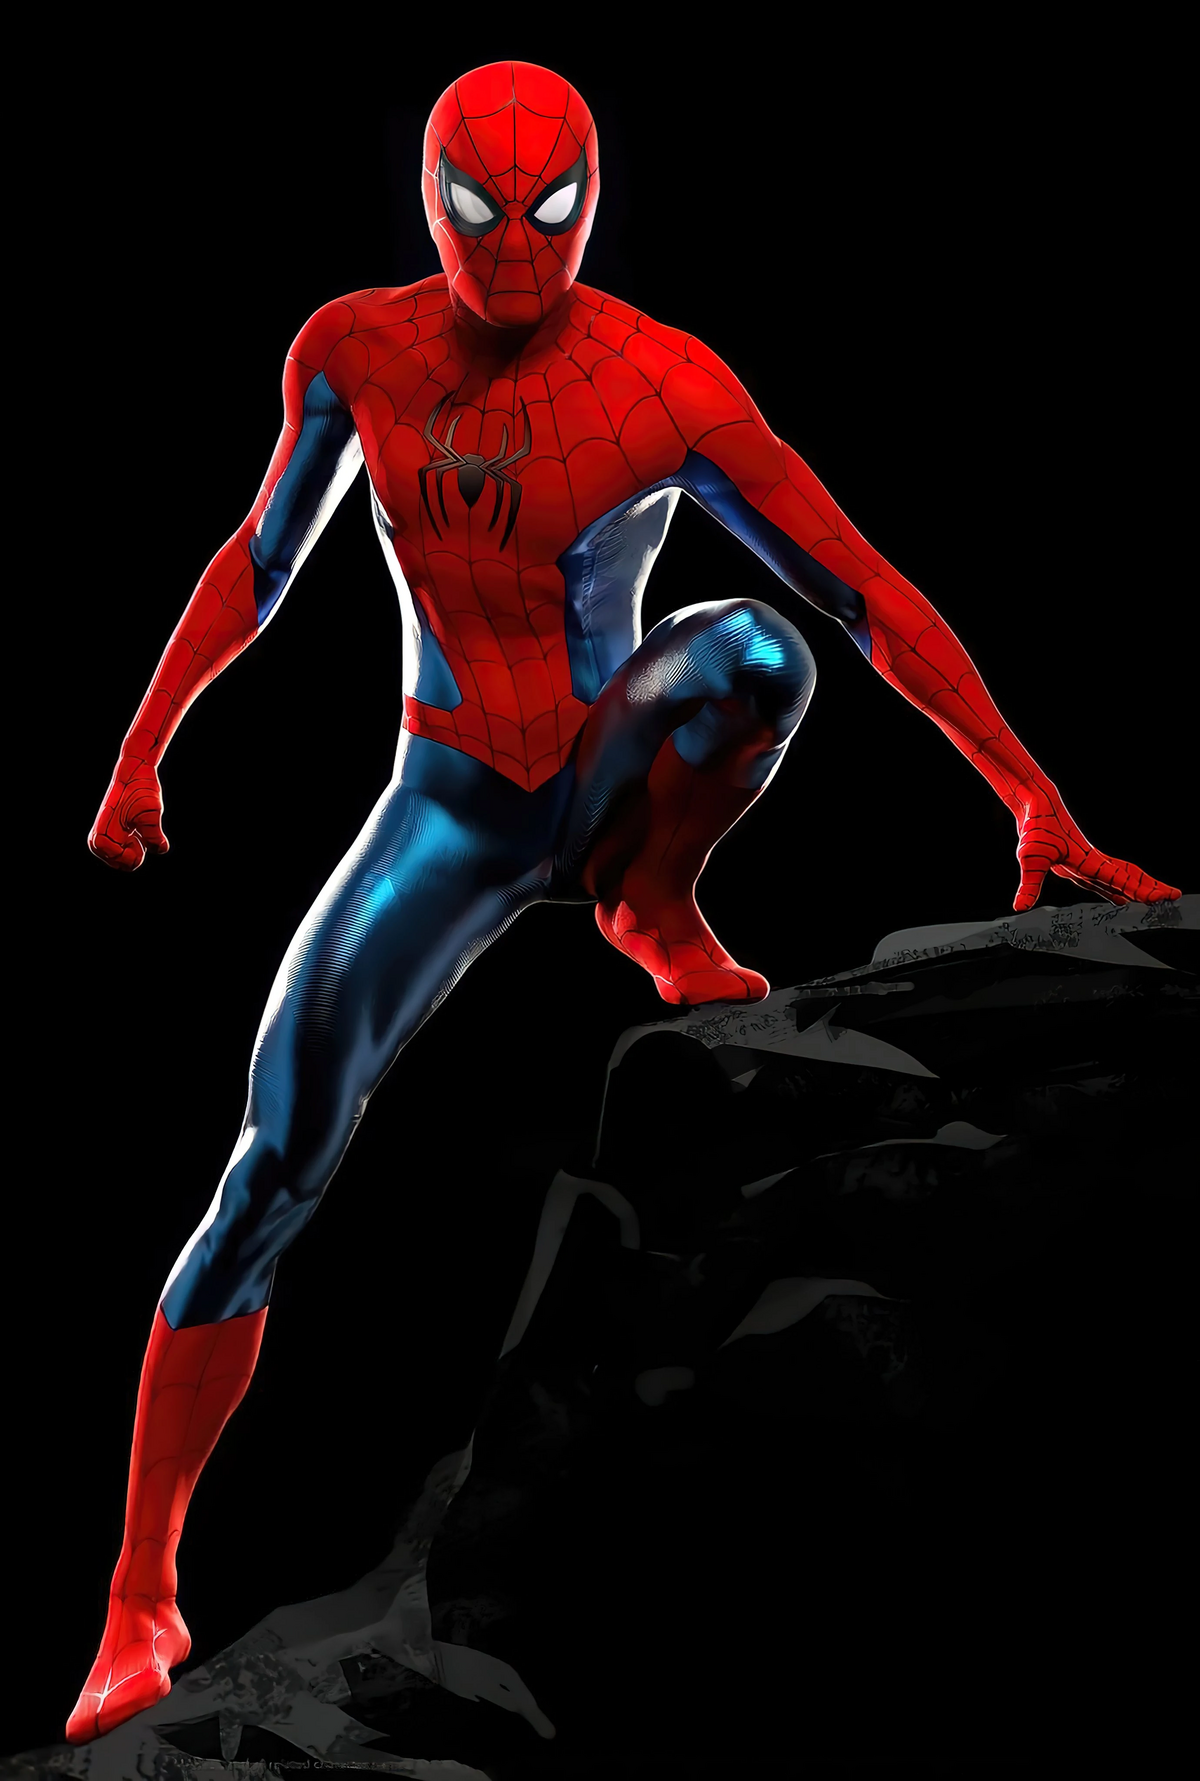 Spider-Man 3 (video game), Spider-Man Films Wiki